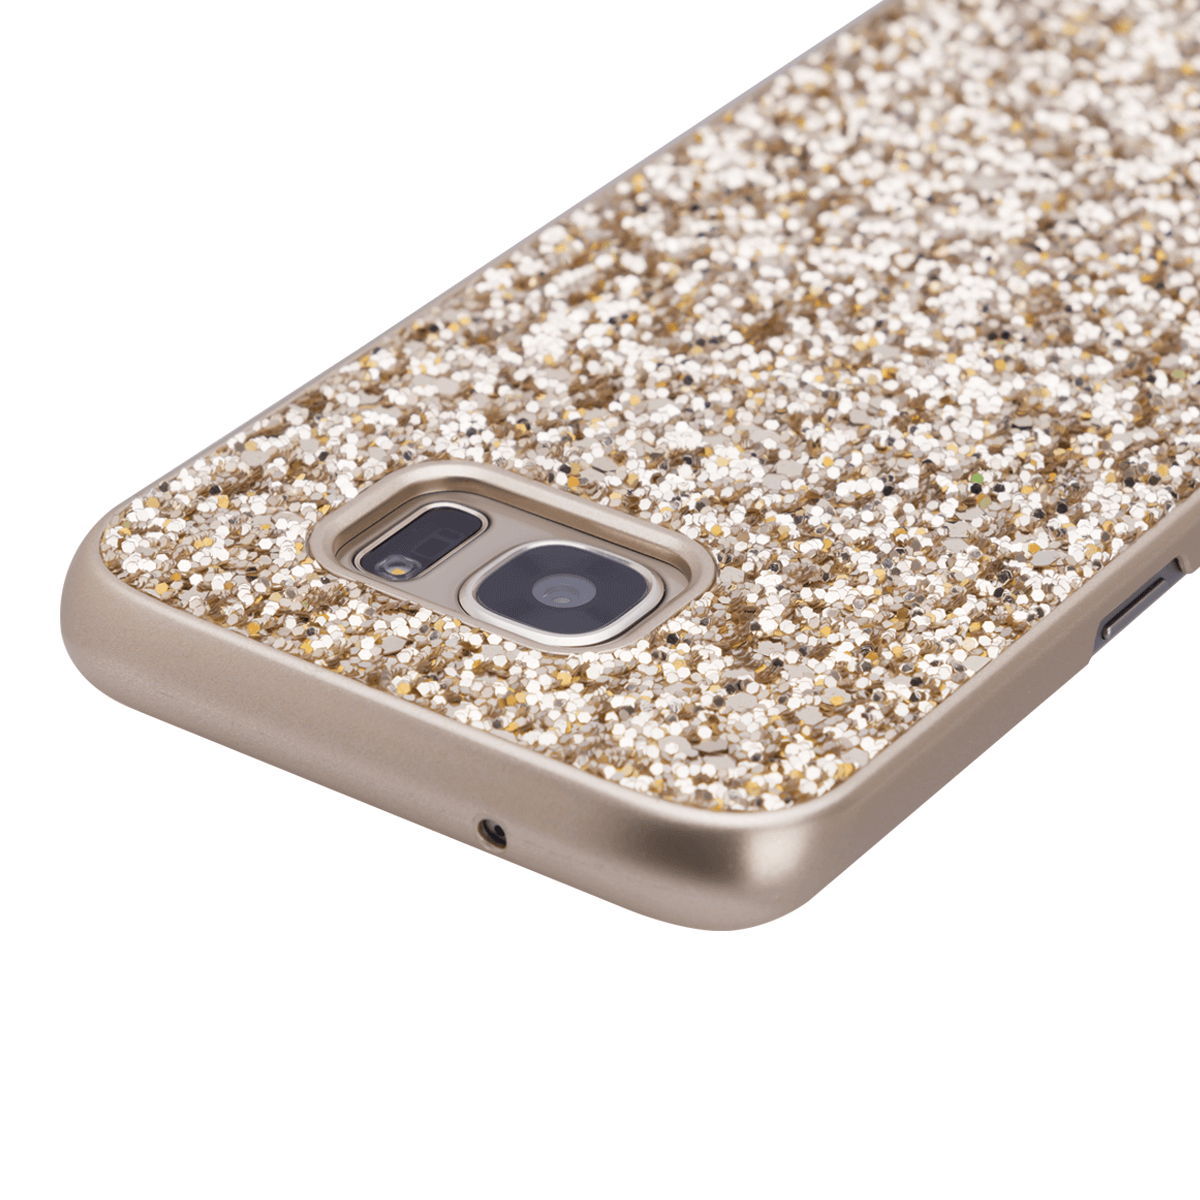 Samsung S7 için spada Glitter Gold renk kapak